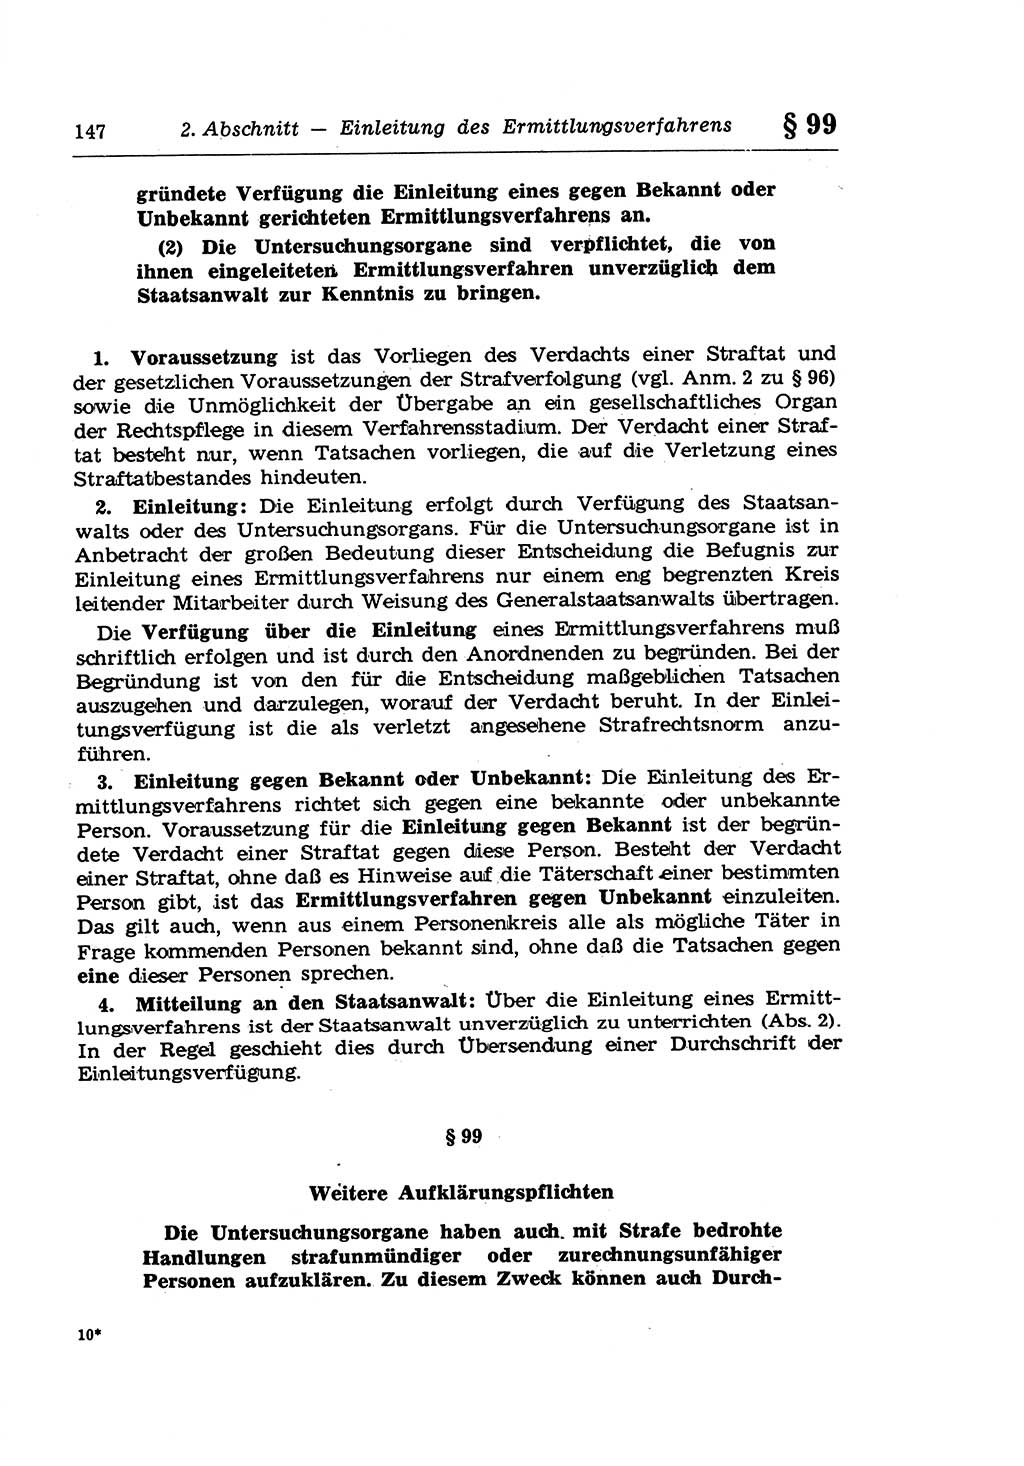 Strafprozeßrecht der DDR (Deutsche Demokratische Republik), Lehrkommentar zur Strafprozeßordnung (StPO) 1968, Seite 147 (Strafprozeßr. DDR Lehrkomm. StPO 19688, S. 147)